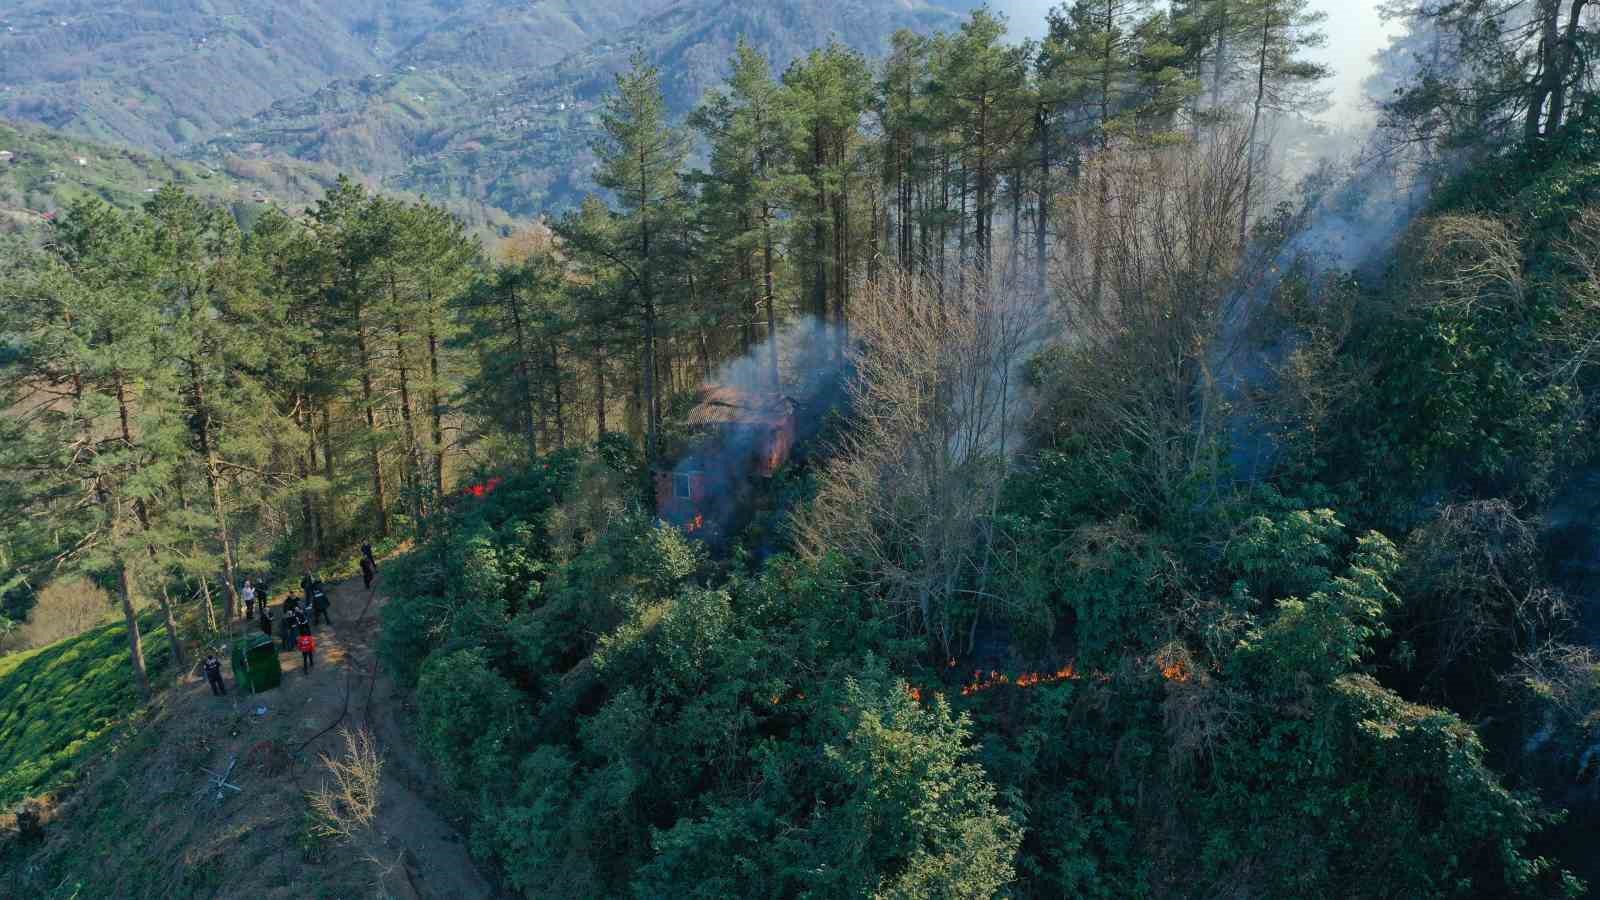 Artvin’de çıkan orman yangınında bir kişi gözaltına alındı
